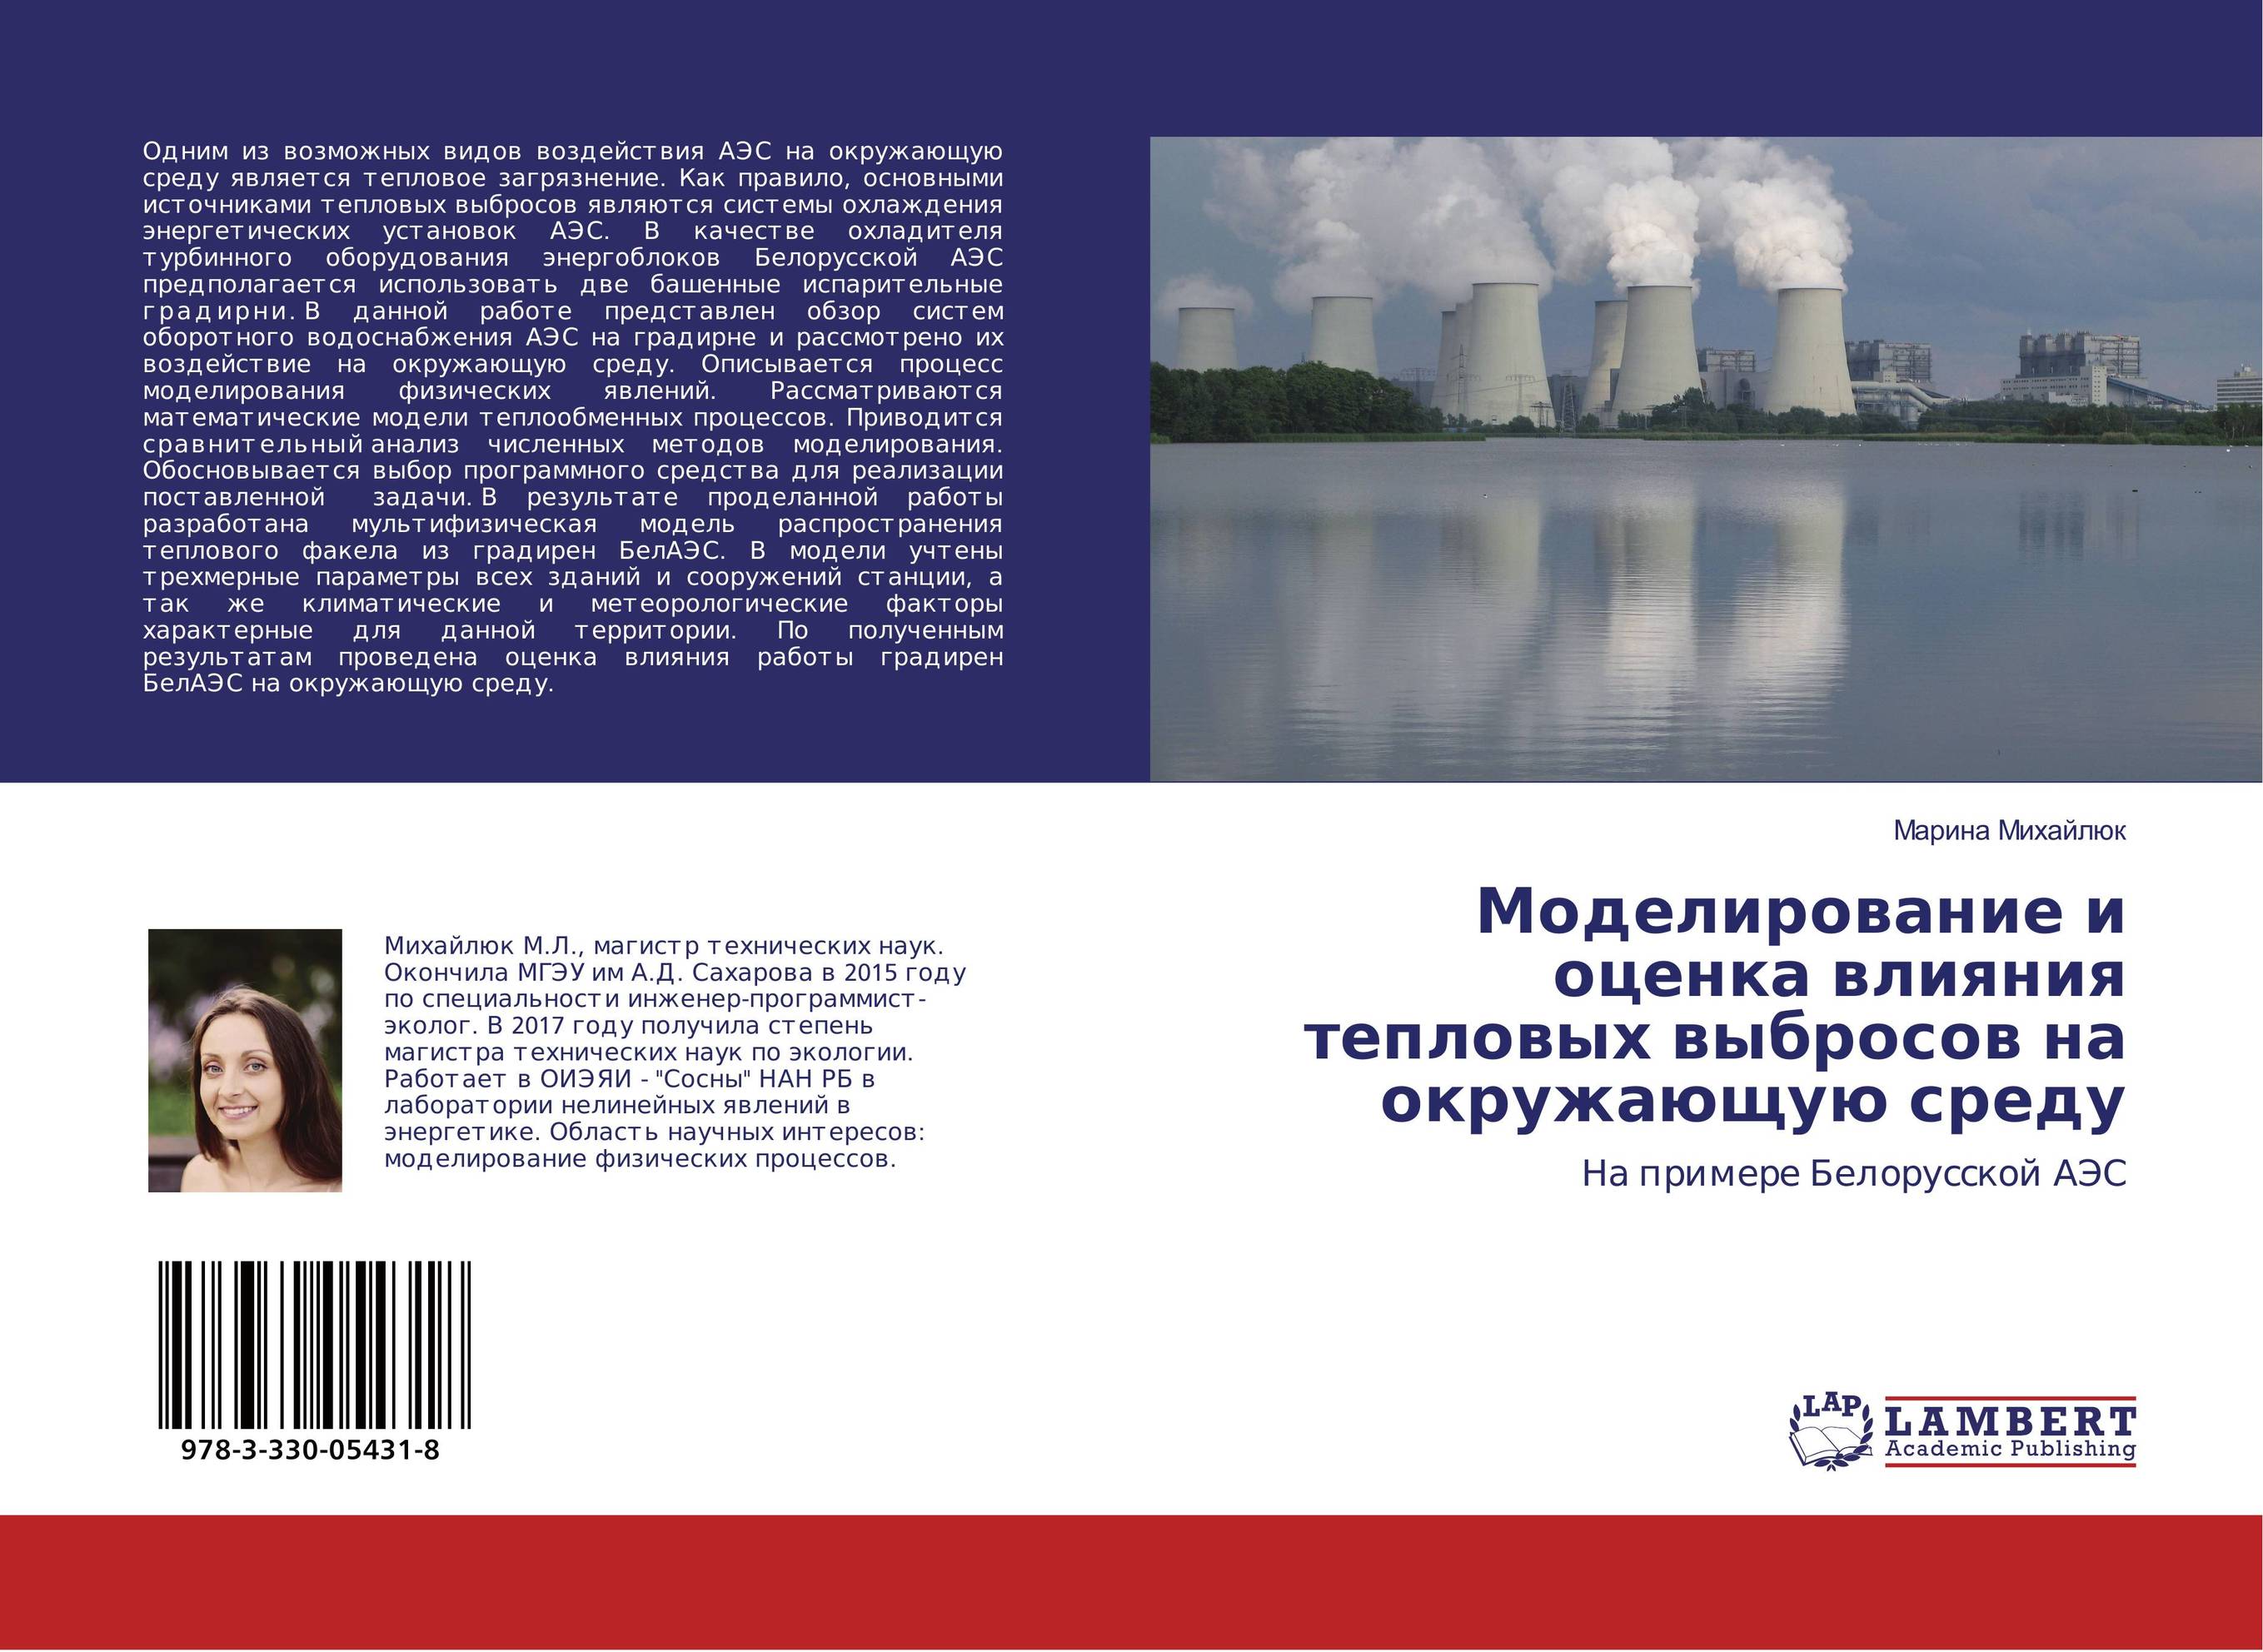 
        Моделирование и оценка влияния тепловых выбросов на окружающую среду. На примере Белорусской АЭС.
      